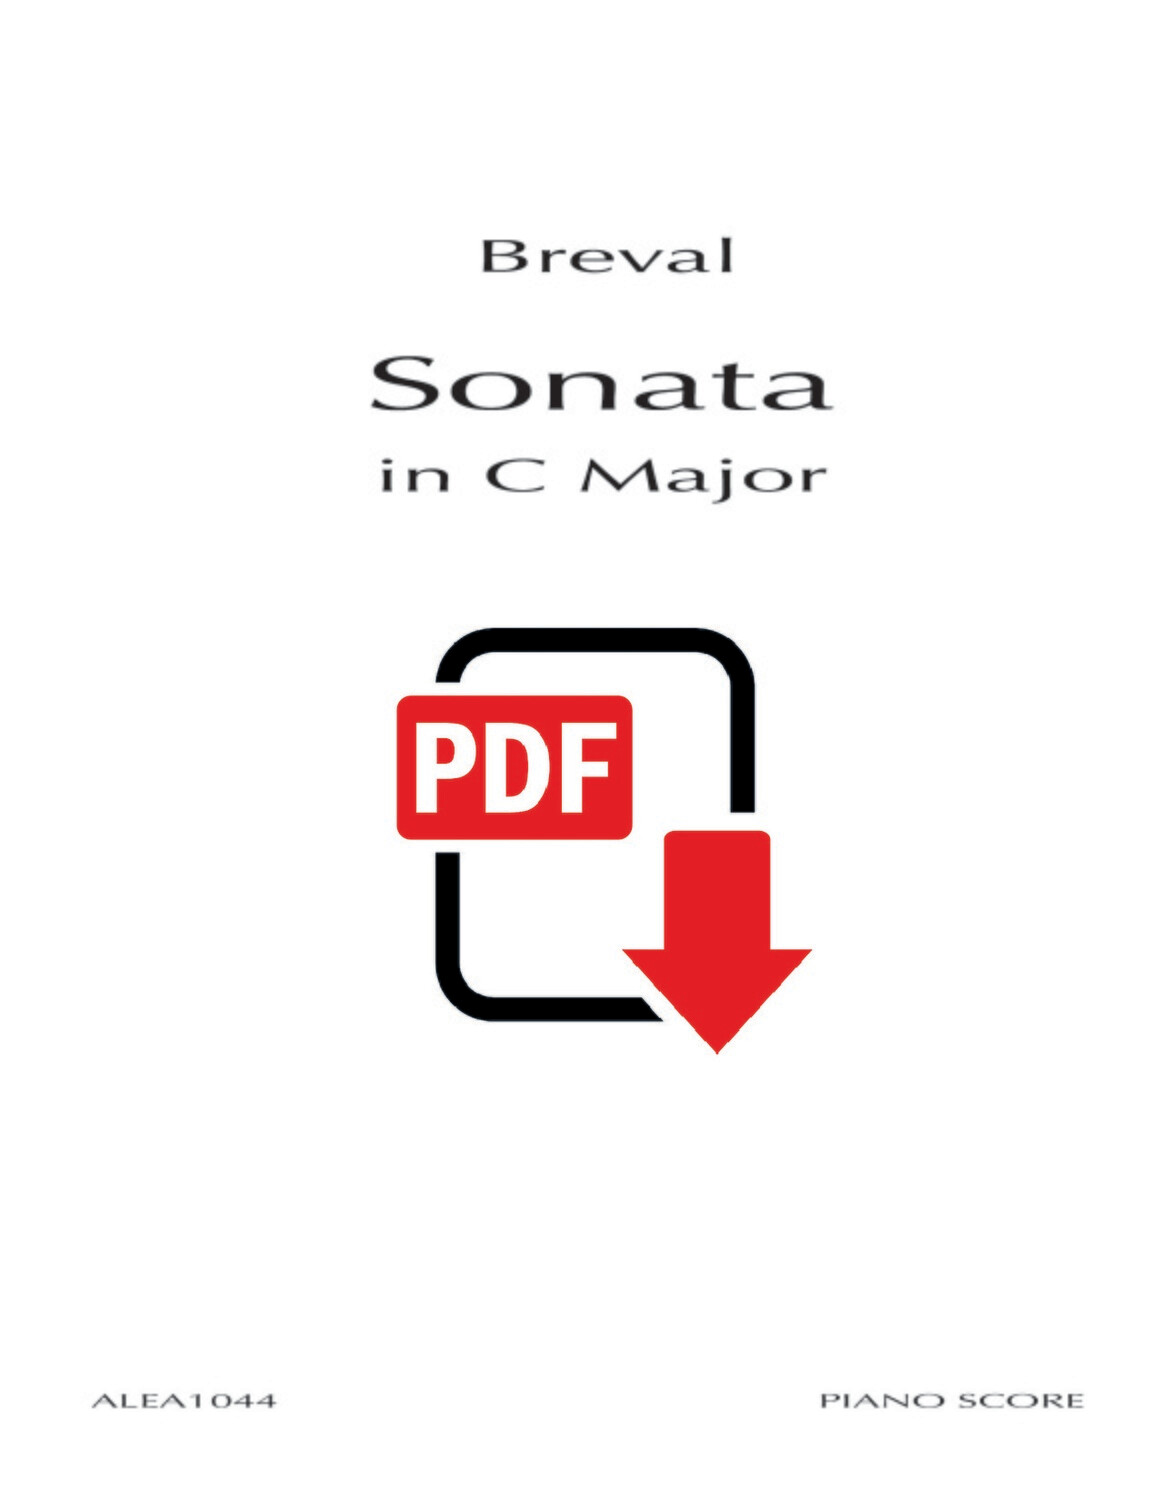 Breval: Sonata in C Major (PDF)